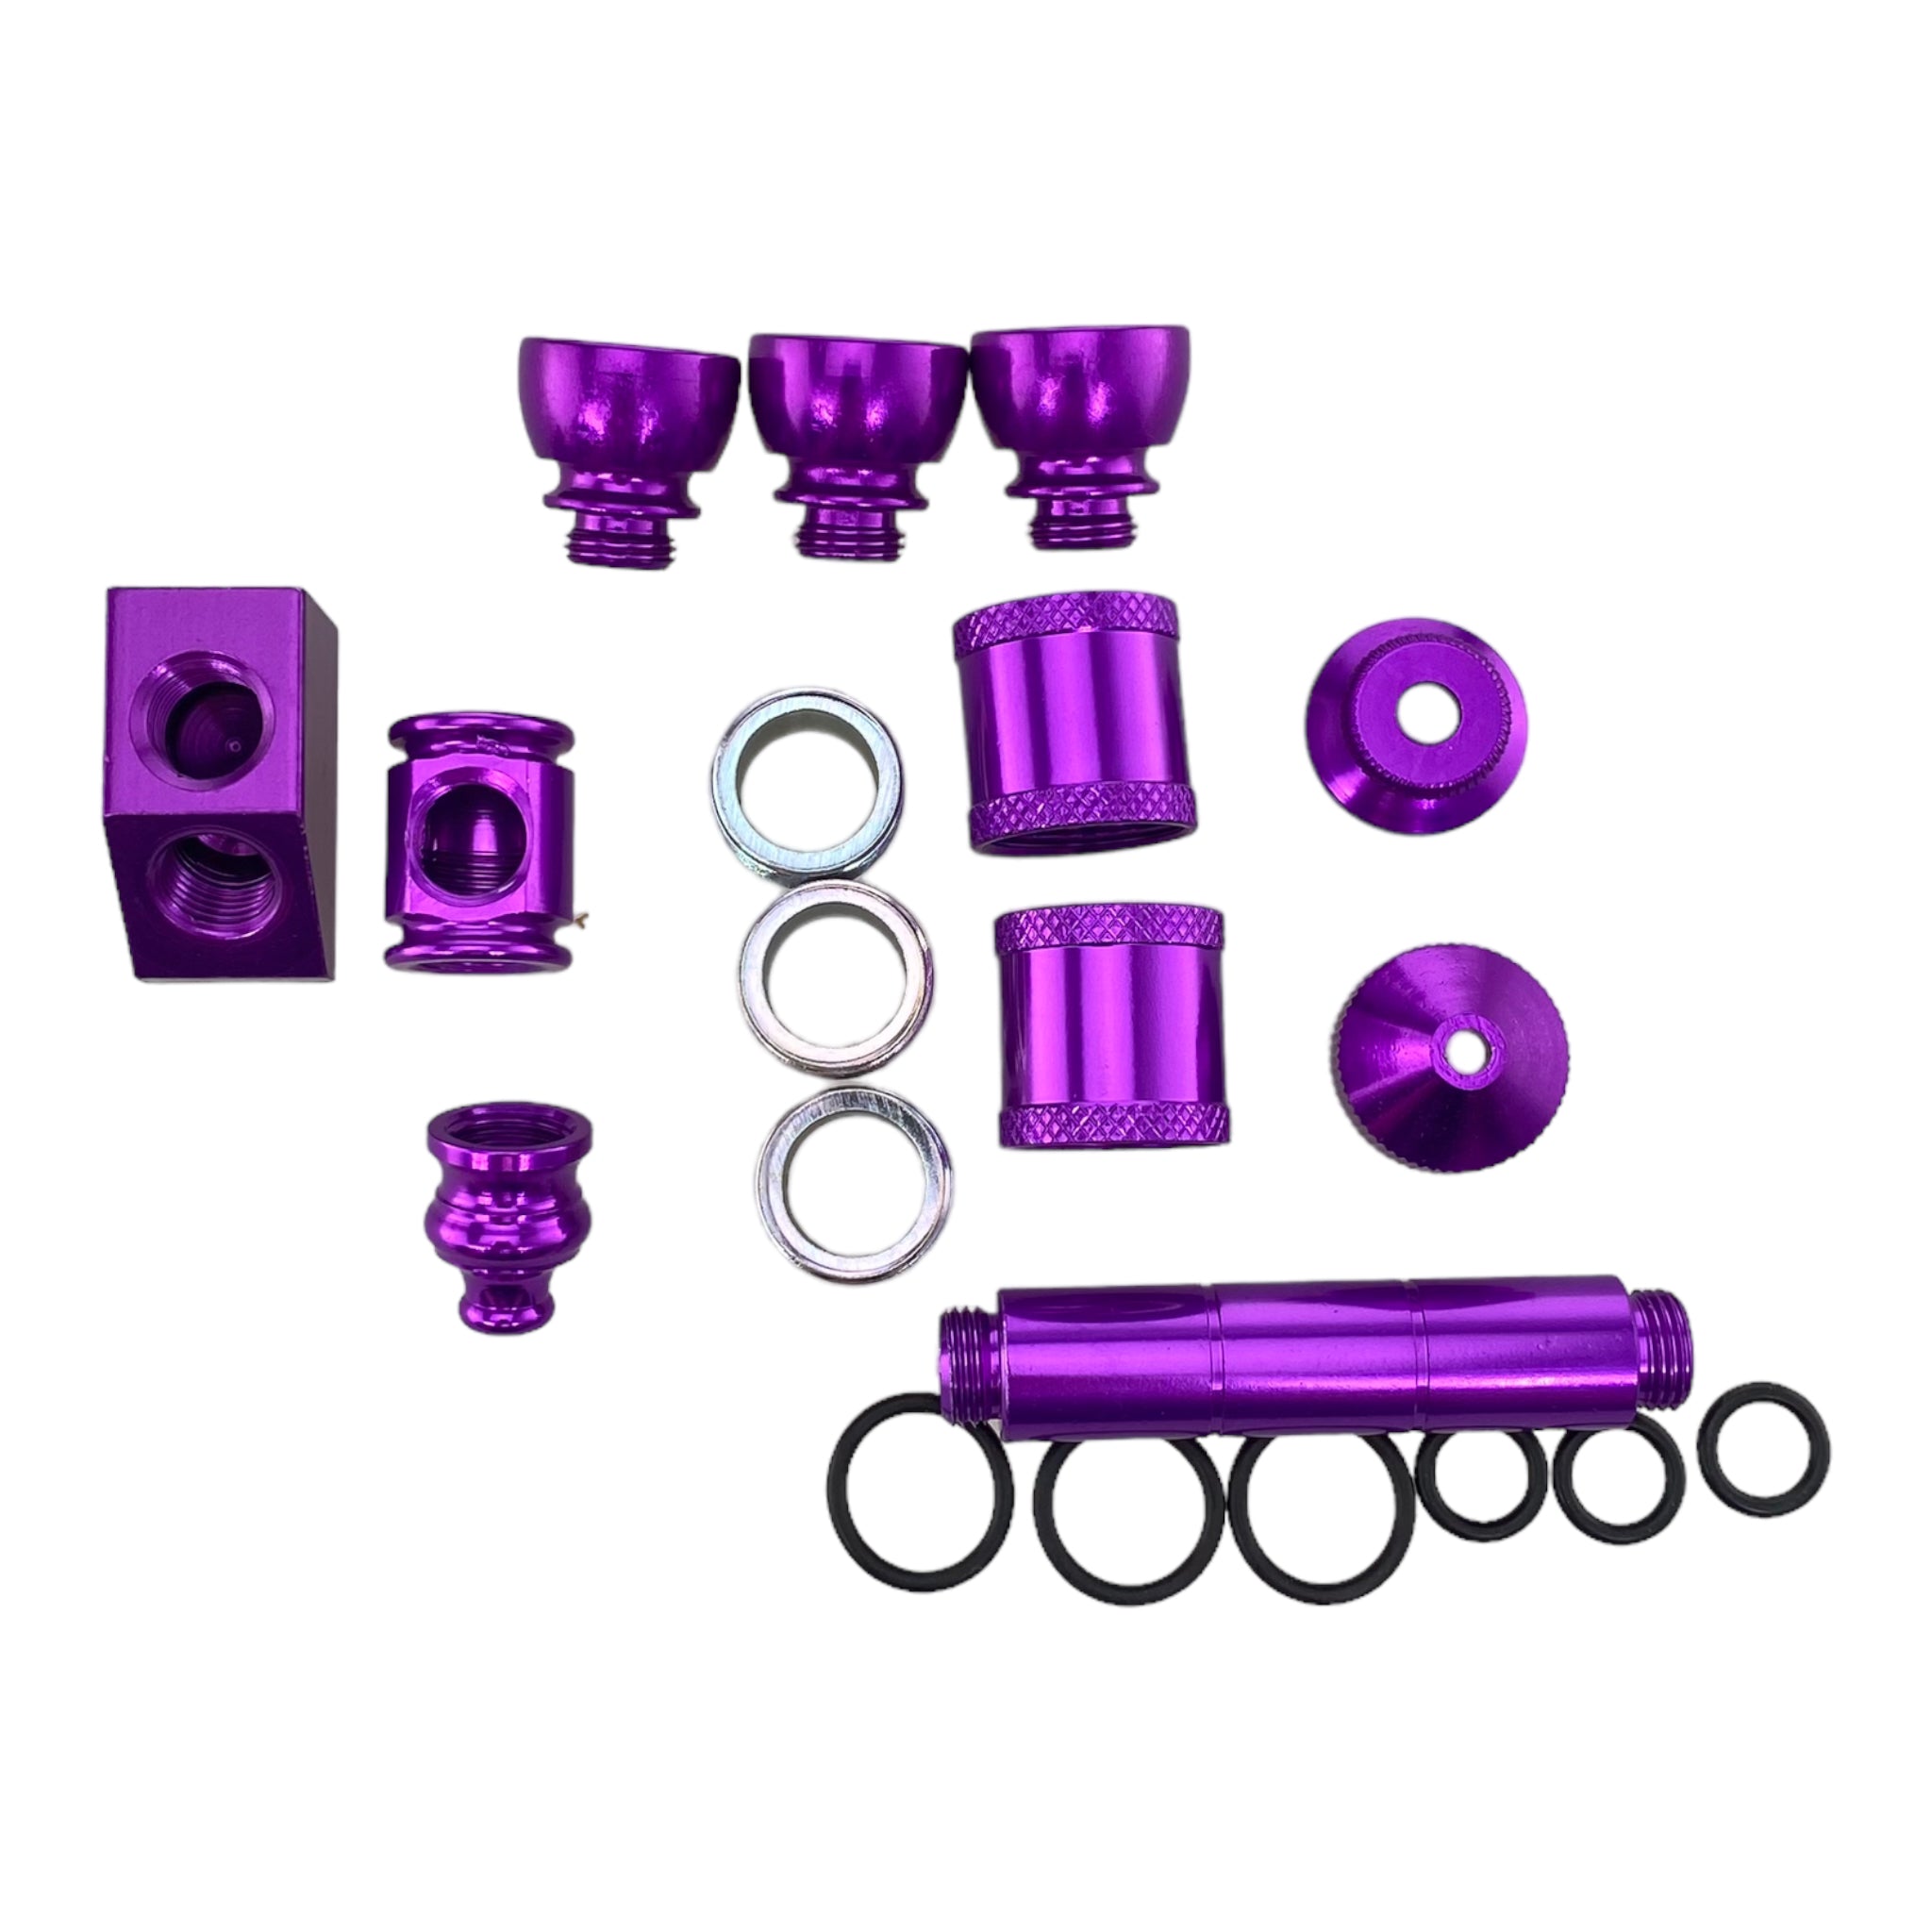 Aluminum Metal smoking Pipe Makers Kit in Purple